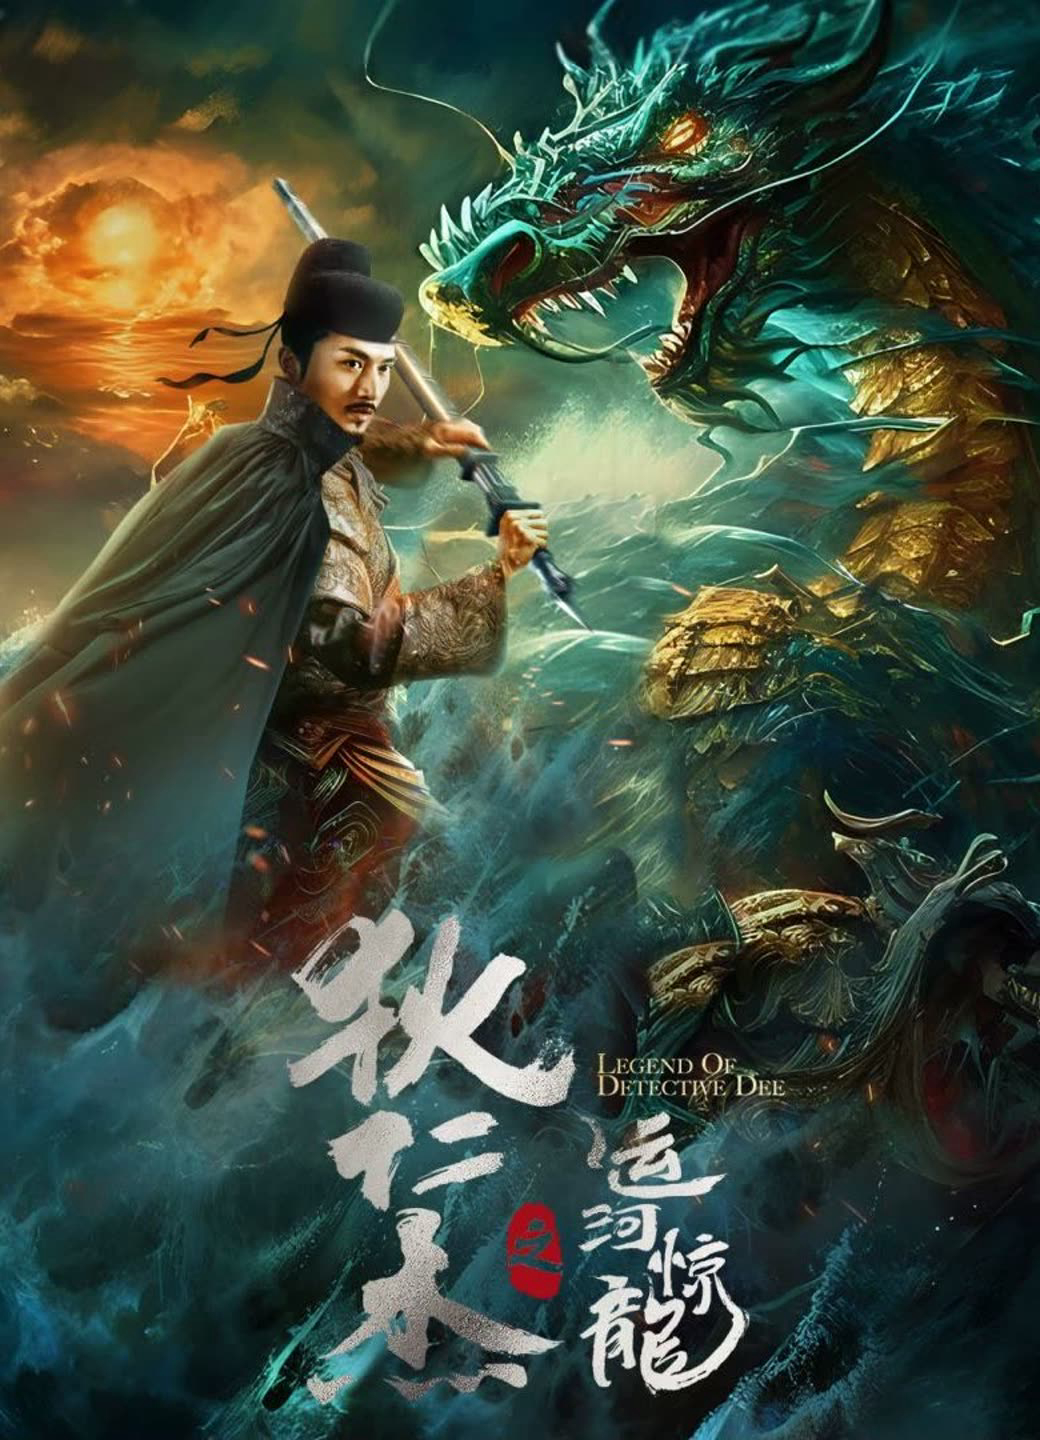 Poster Phim Địch Nhân Kiệt: Vận Hà Kinh Long (LEGEND OF DETECTIVE DEE)